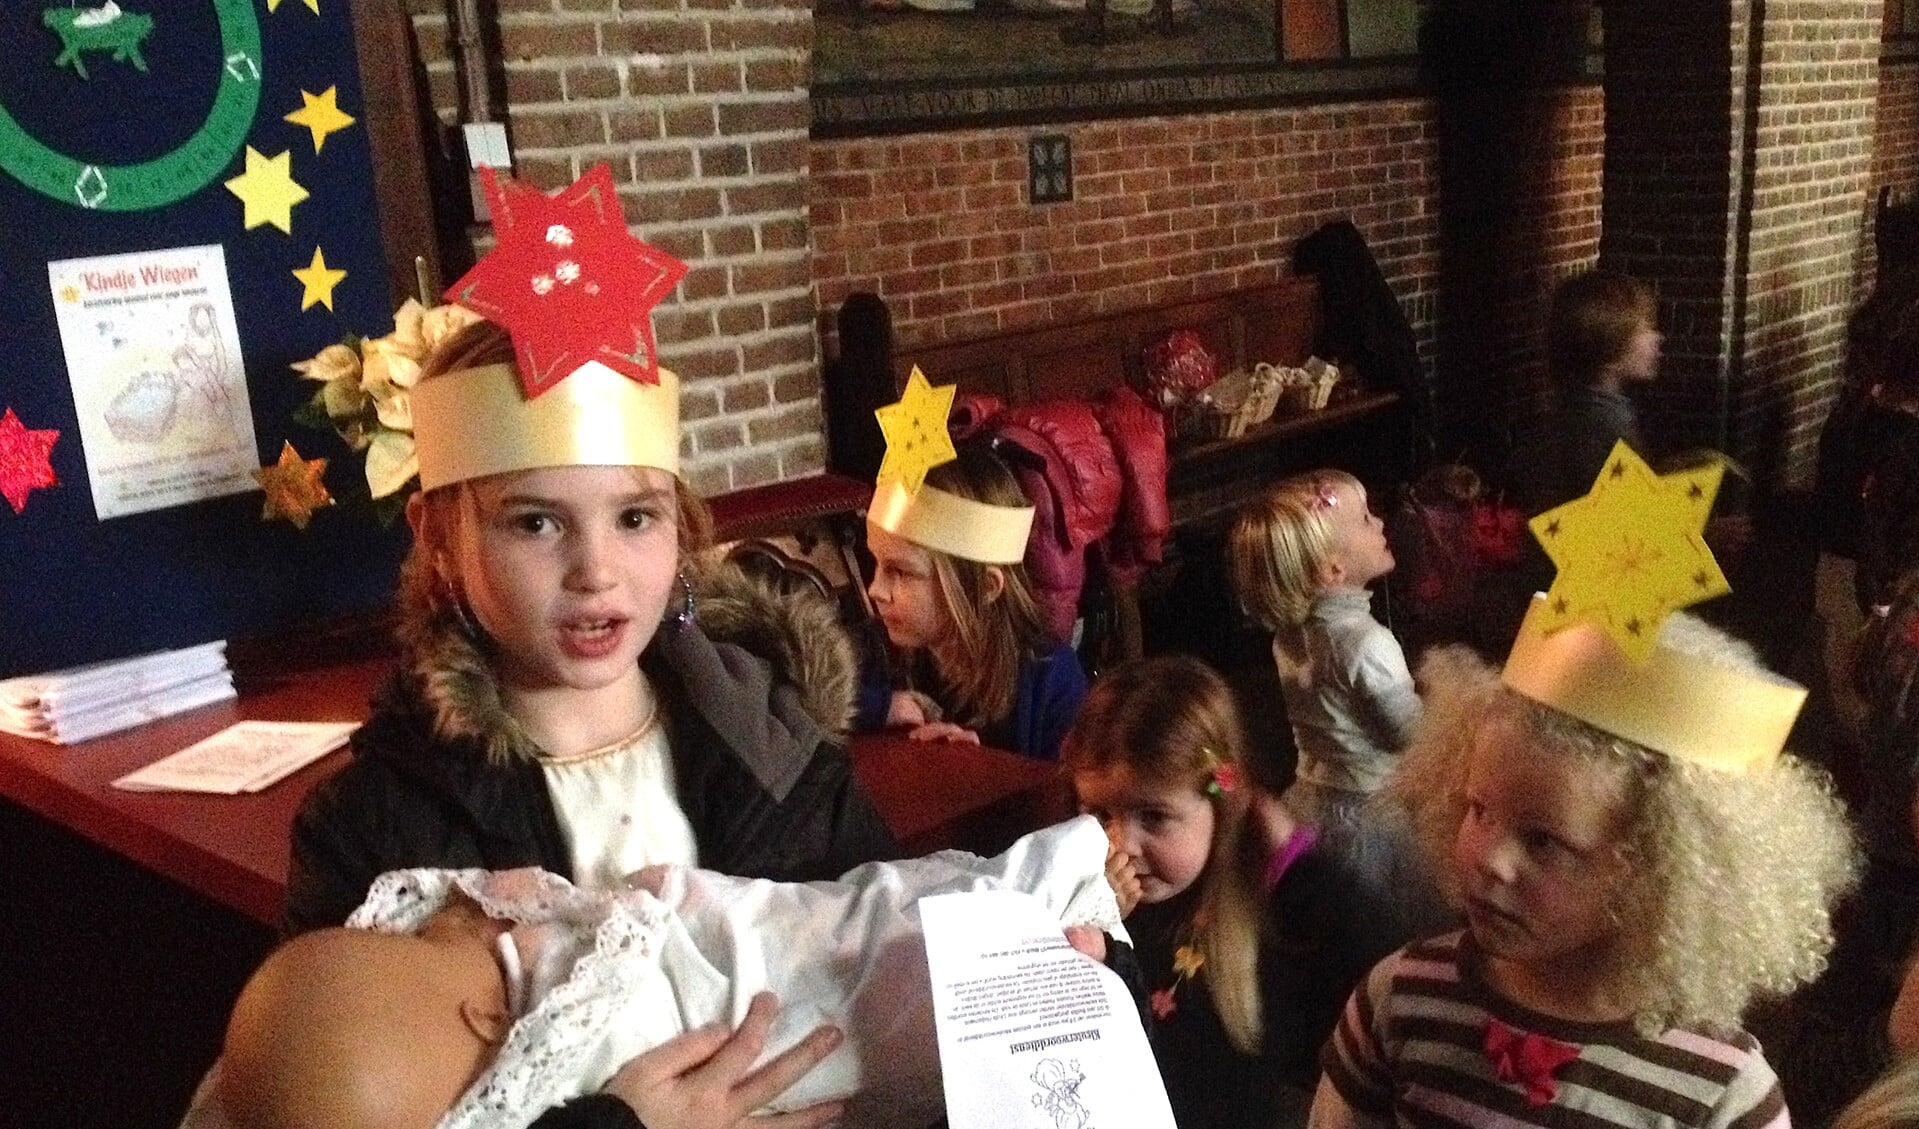 Kinderen krijgen een speciale kroontje met ster op door jongeren gemaakt en voelen zich speciaal.